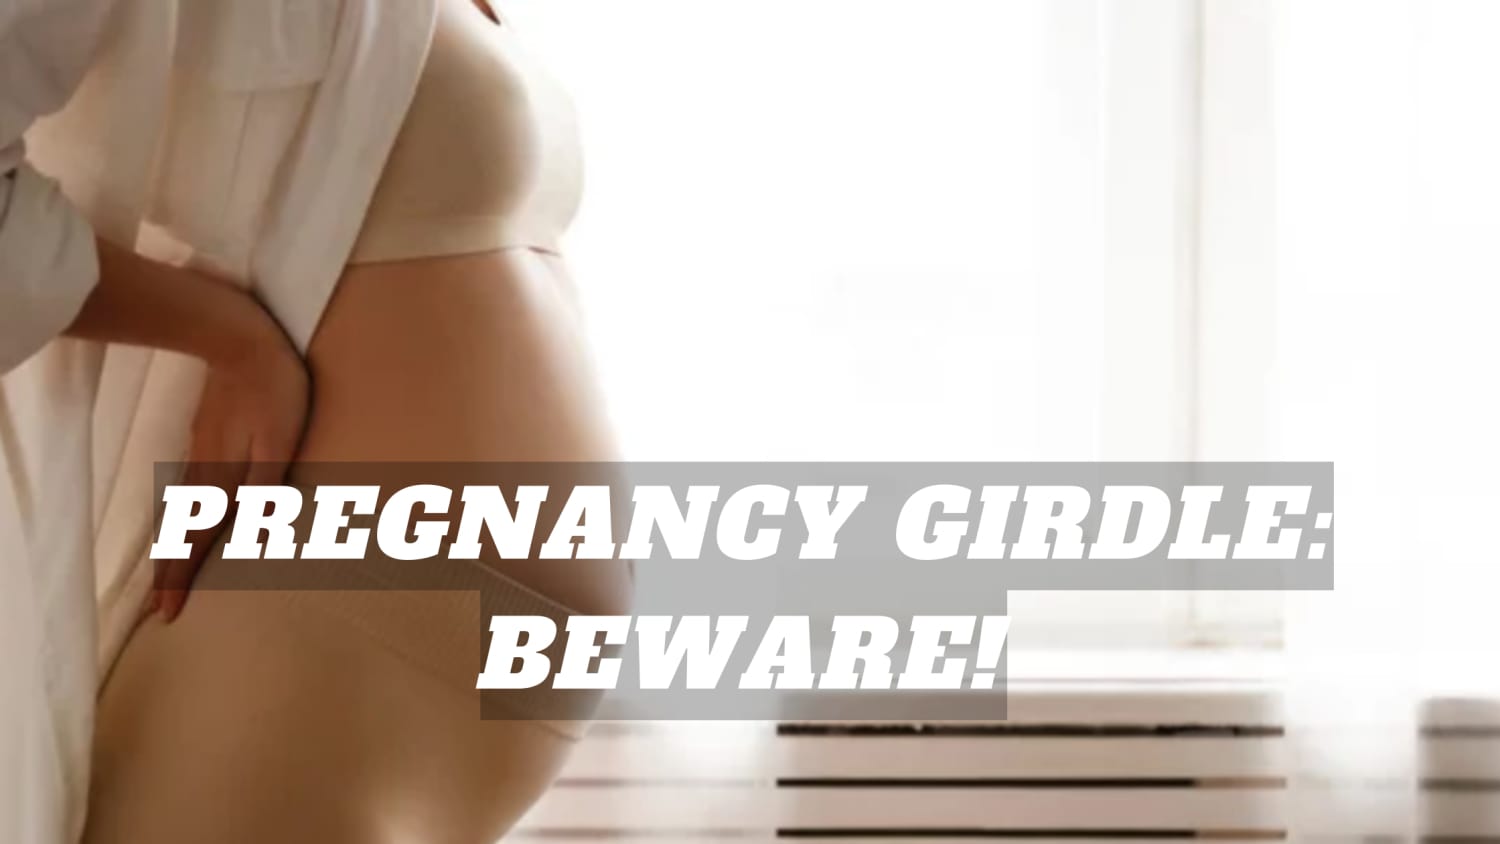 PREGNANCY GIRDLE: BEWARE!